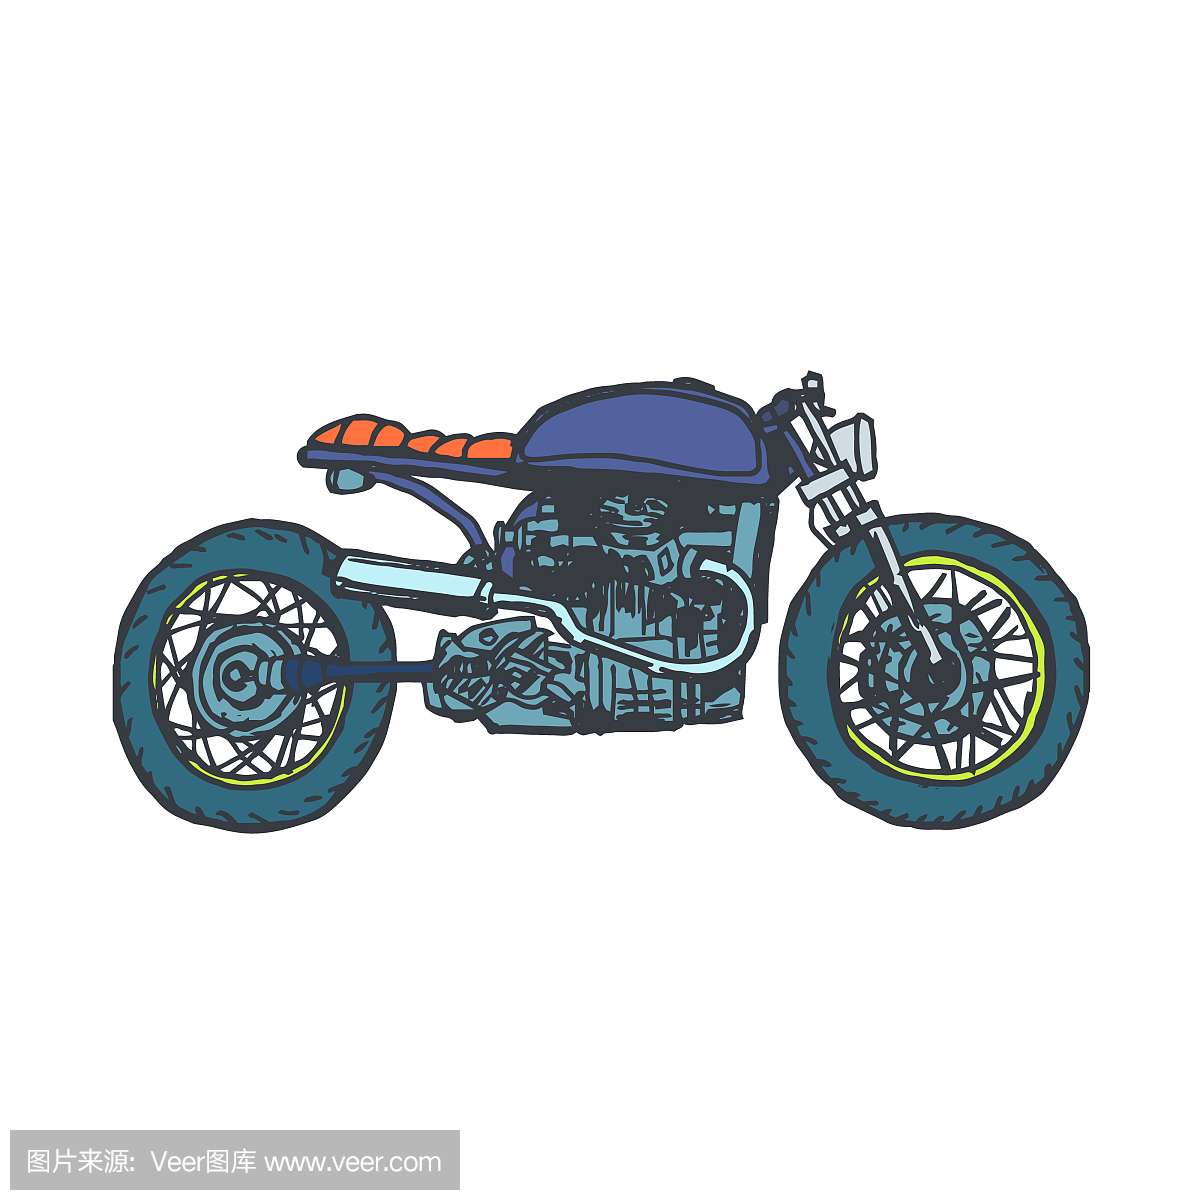 手绘复古摩托车矢量logo设计模板。自行车或摩